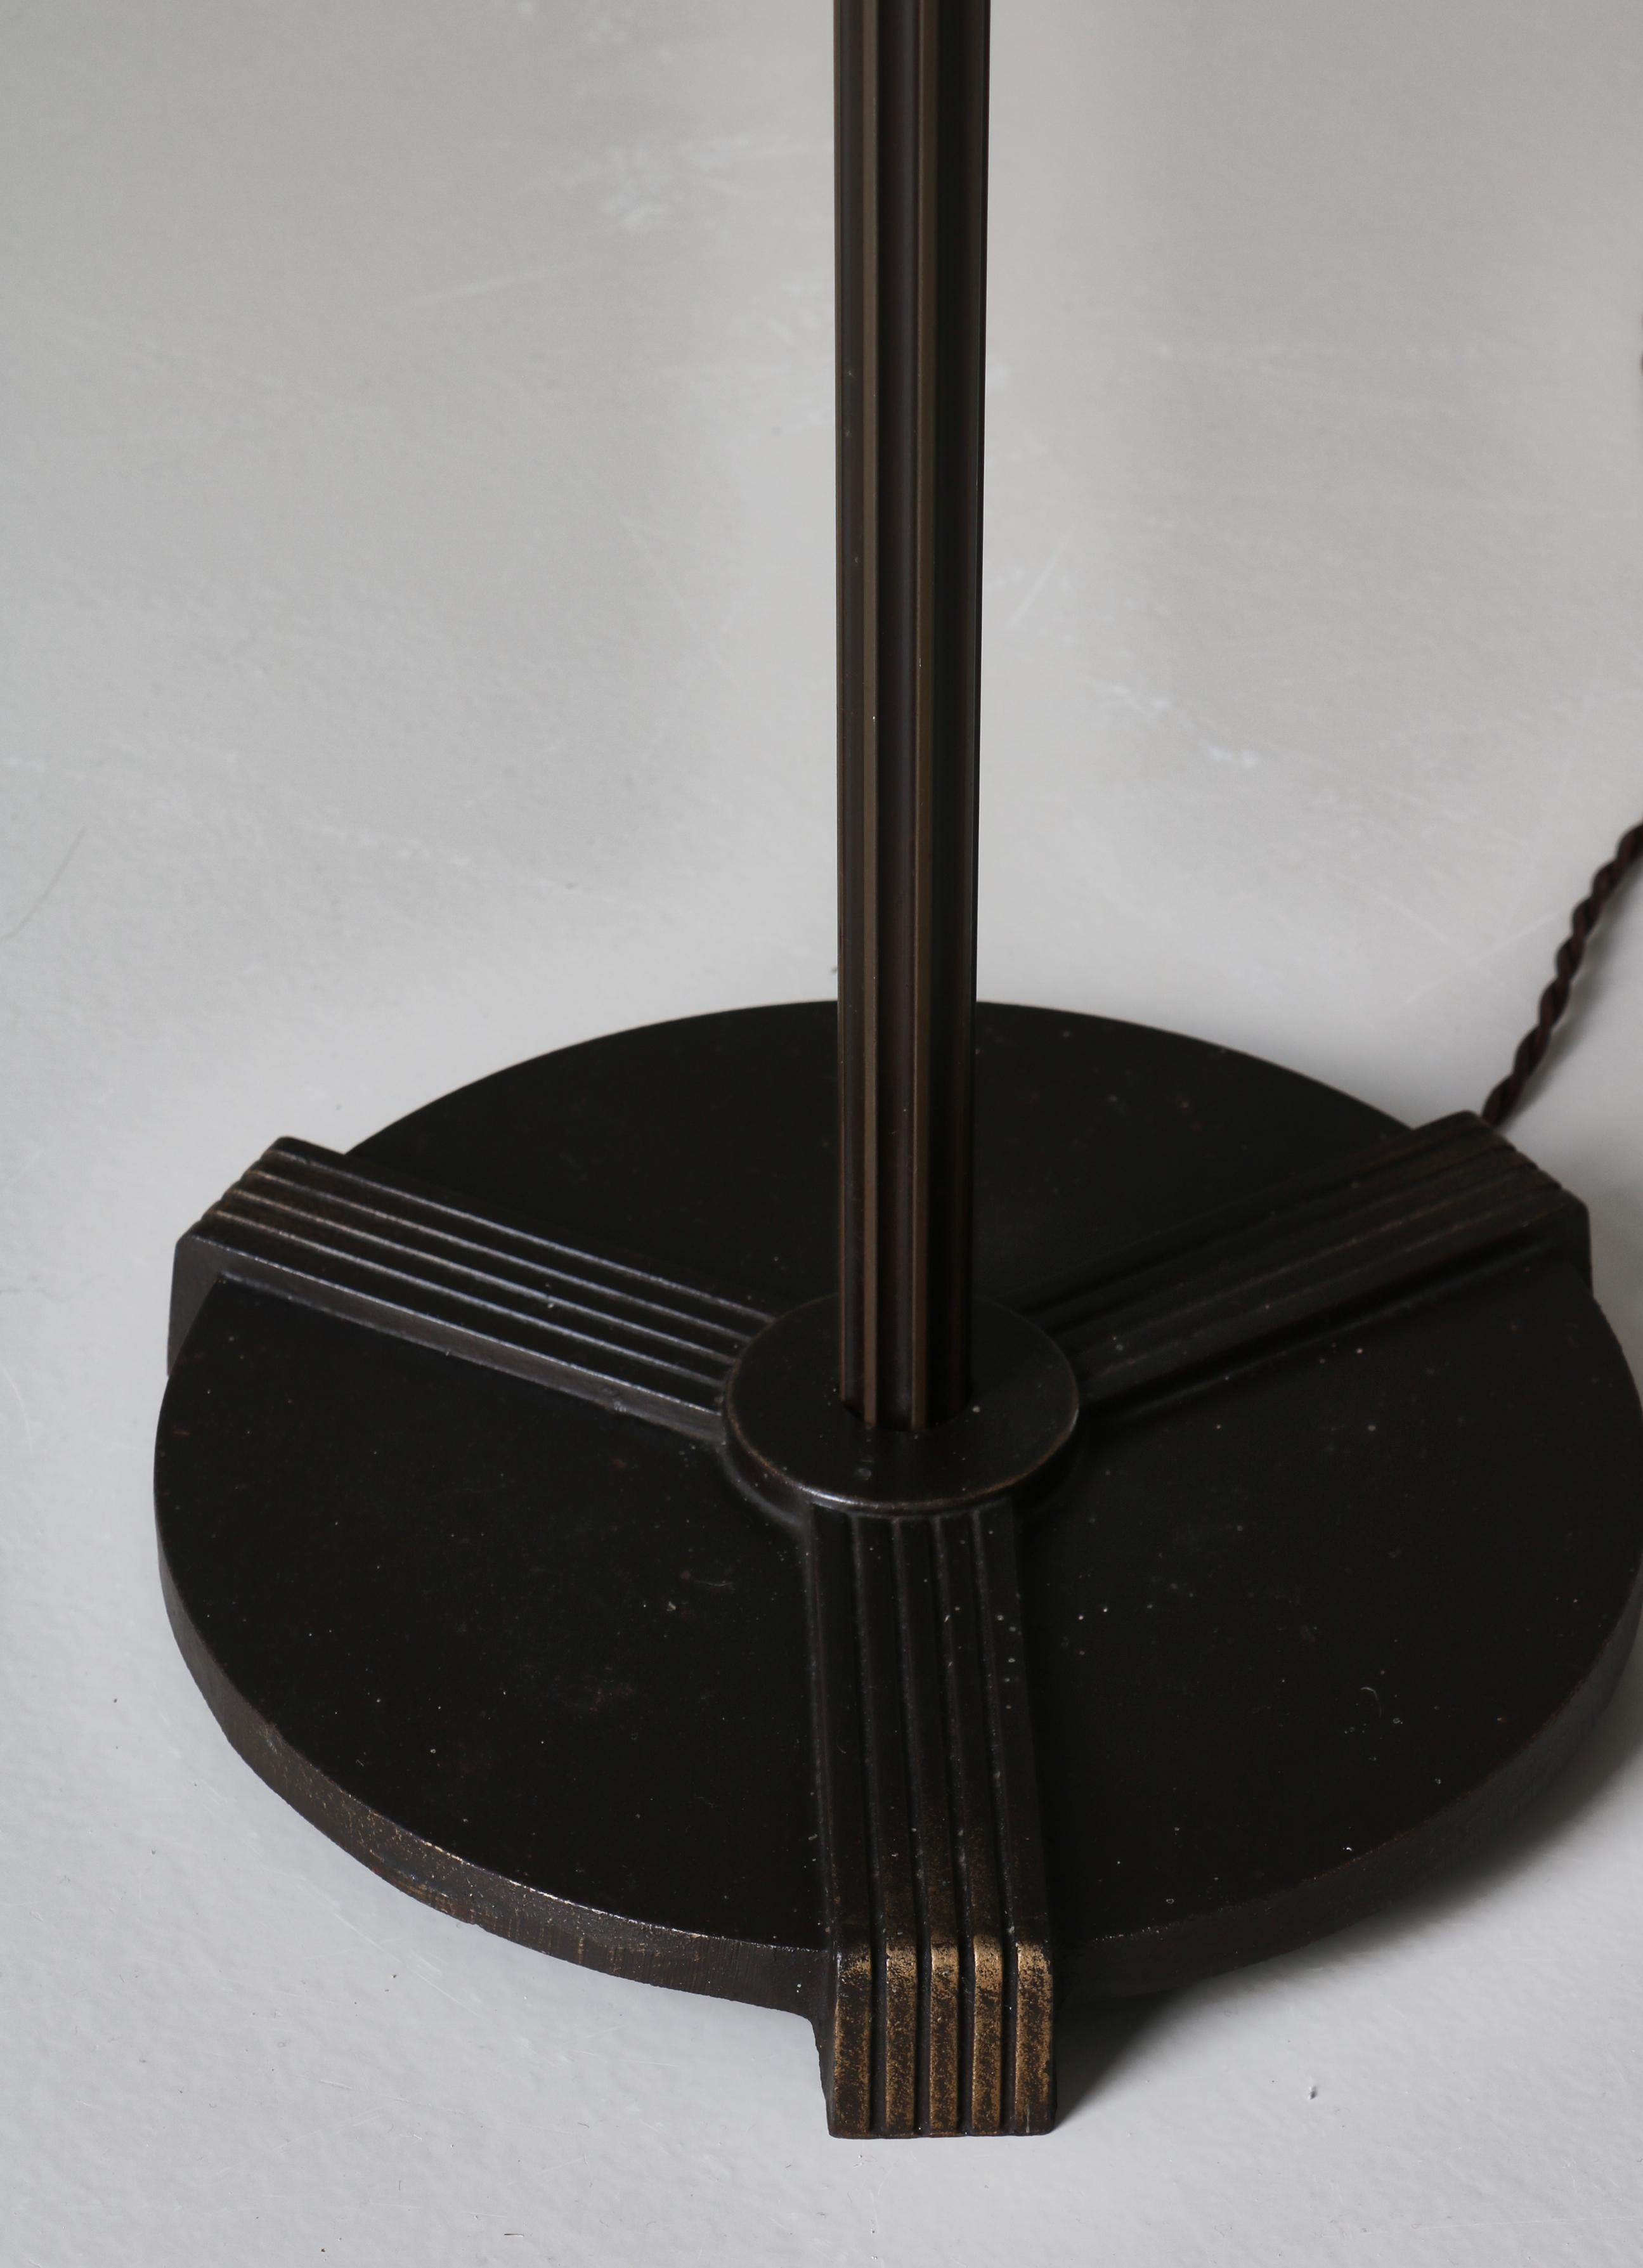 Danish Art Deco Floor Lamp in Patinated Bronze, 1930s For Sale 2